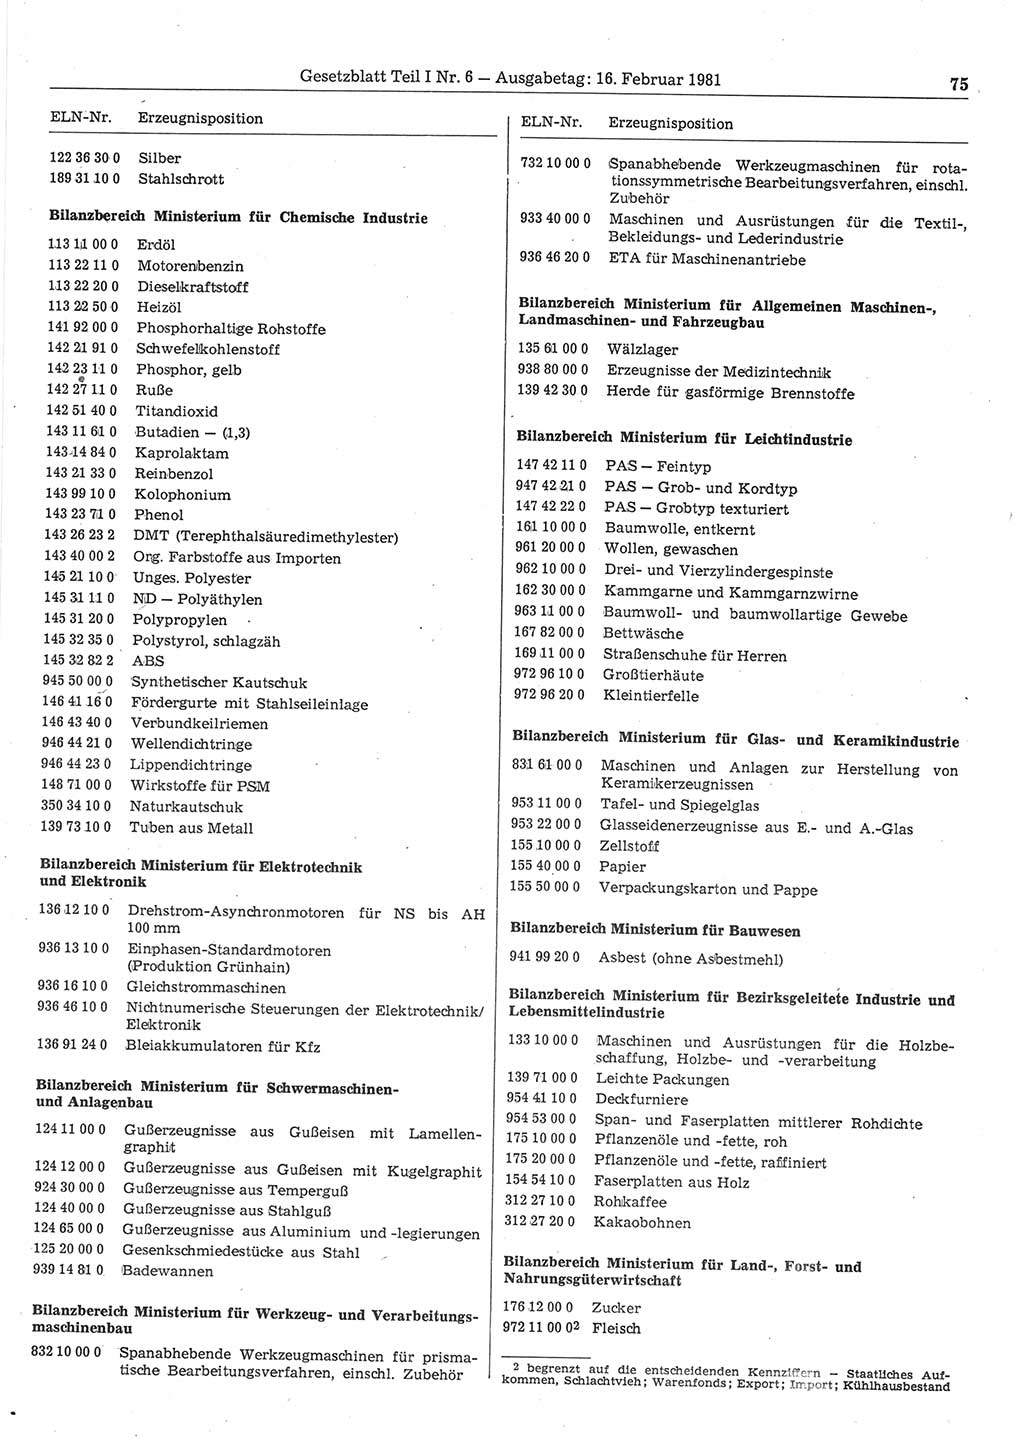 Gesetzblatt (GBl.) der Deutschen Demokratischen Republik (DDR) Teil Ⅰ 1981, Seite 75 (GBl. DDR Ⅰ 1981, S. 75)